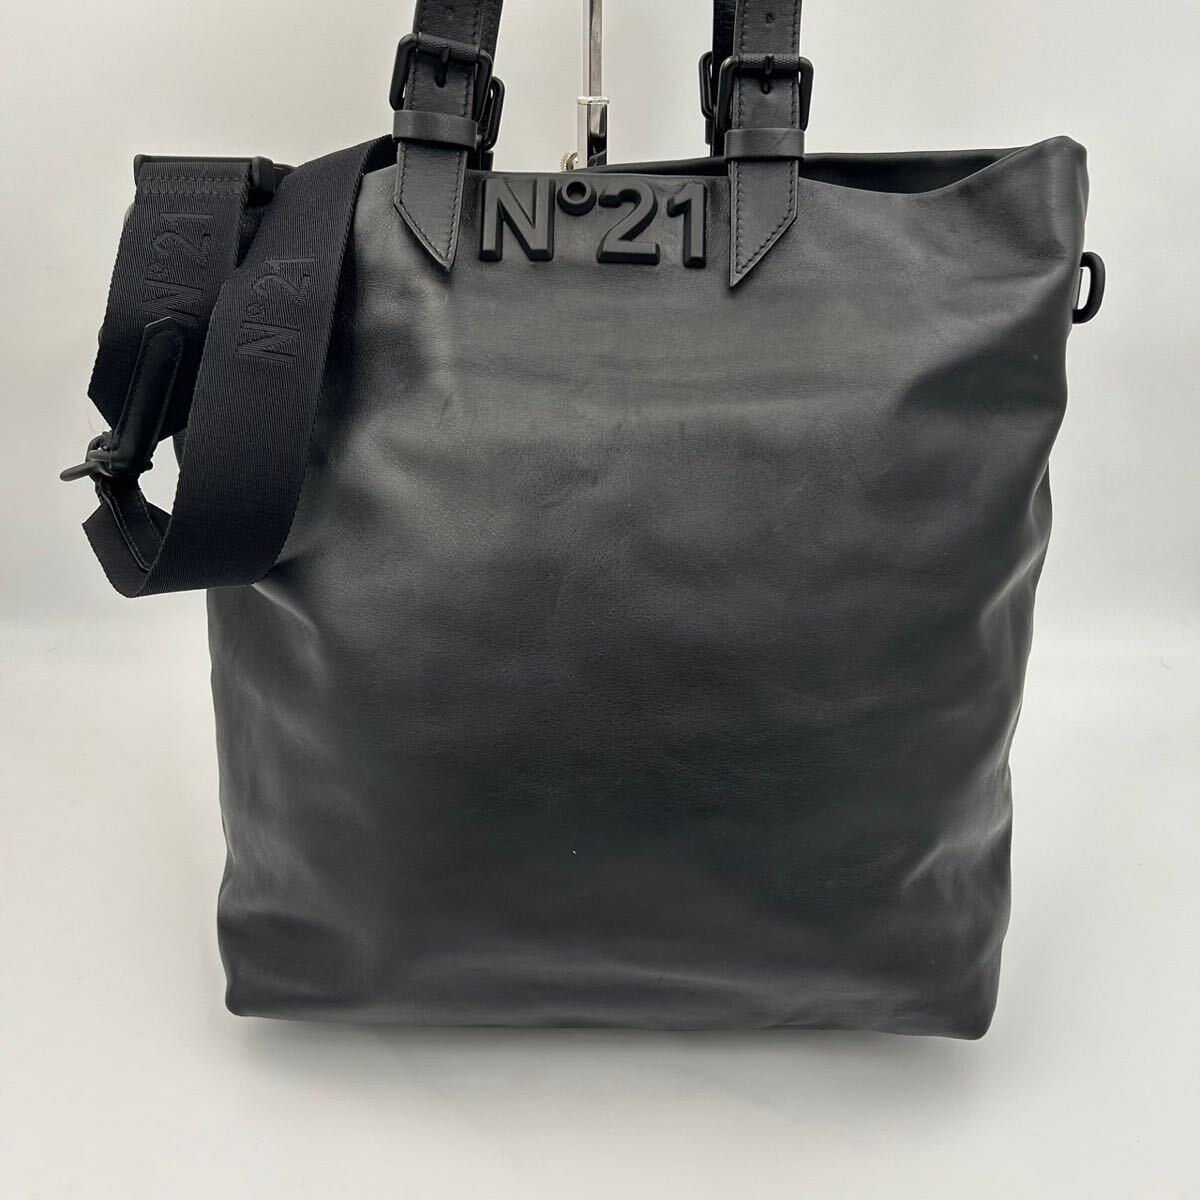 1 иен * прекрасный товар *N°21nmero Vent u-no2wayen Boss Logo портфель большая сумка ручная сумочка сумка на плечо черный мужской A4